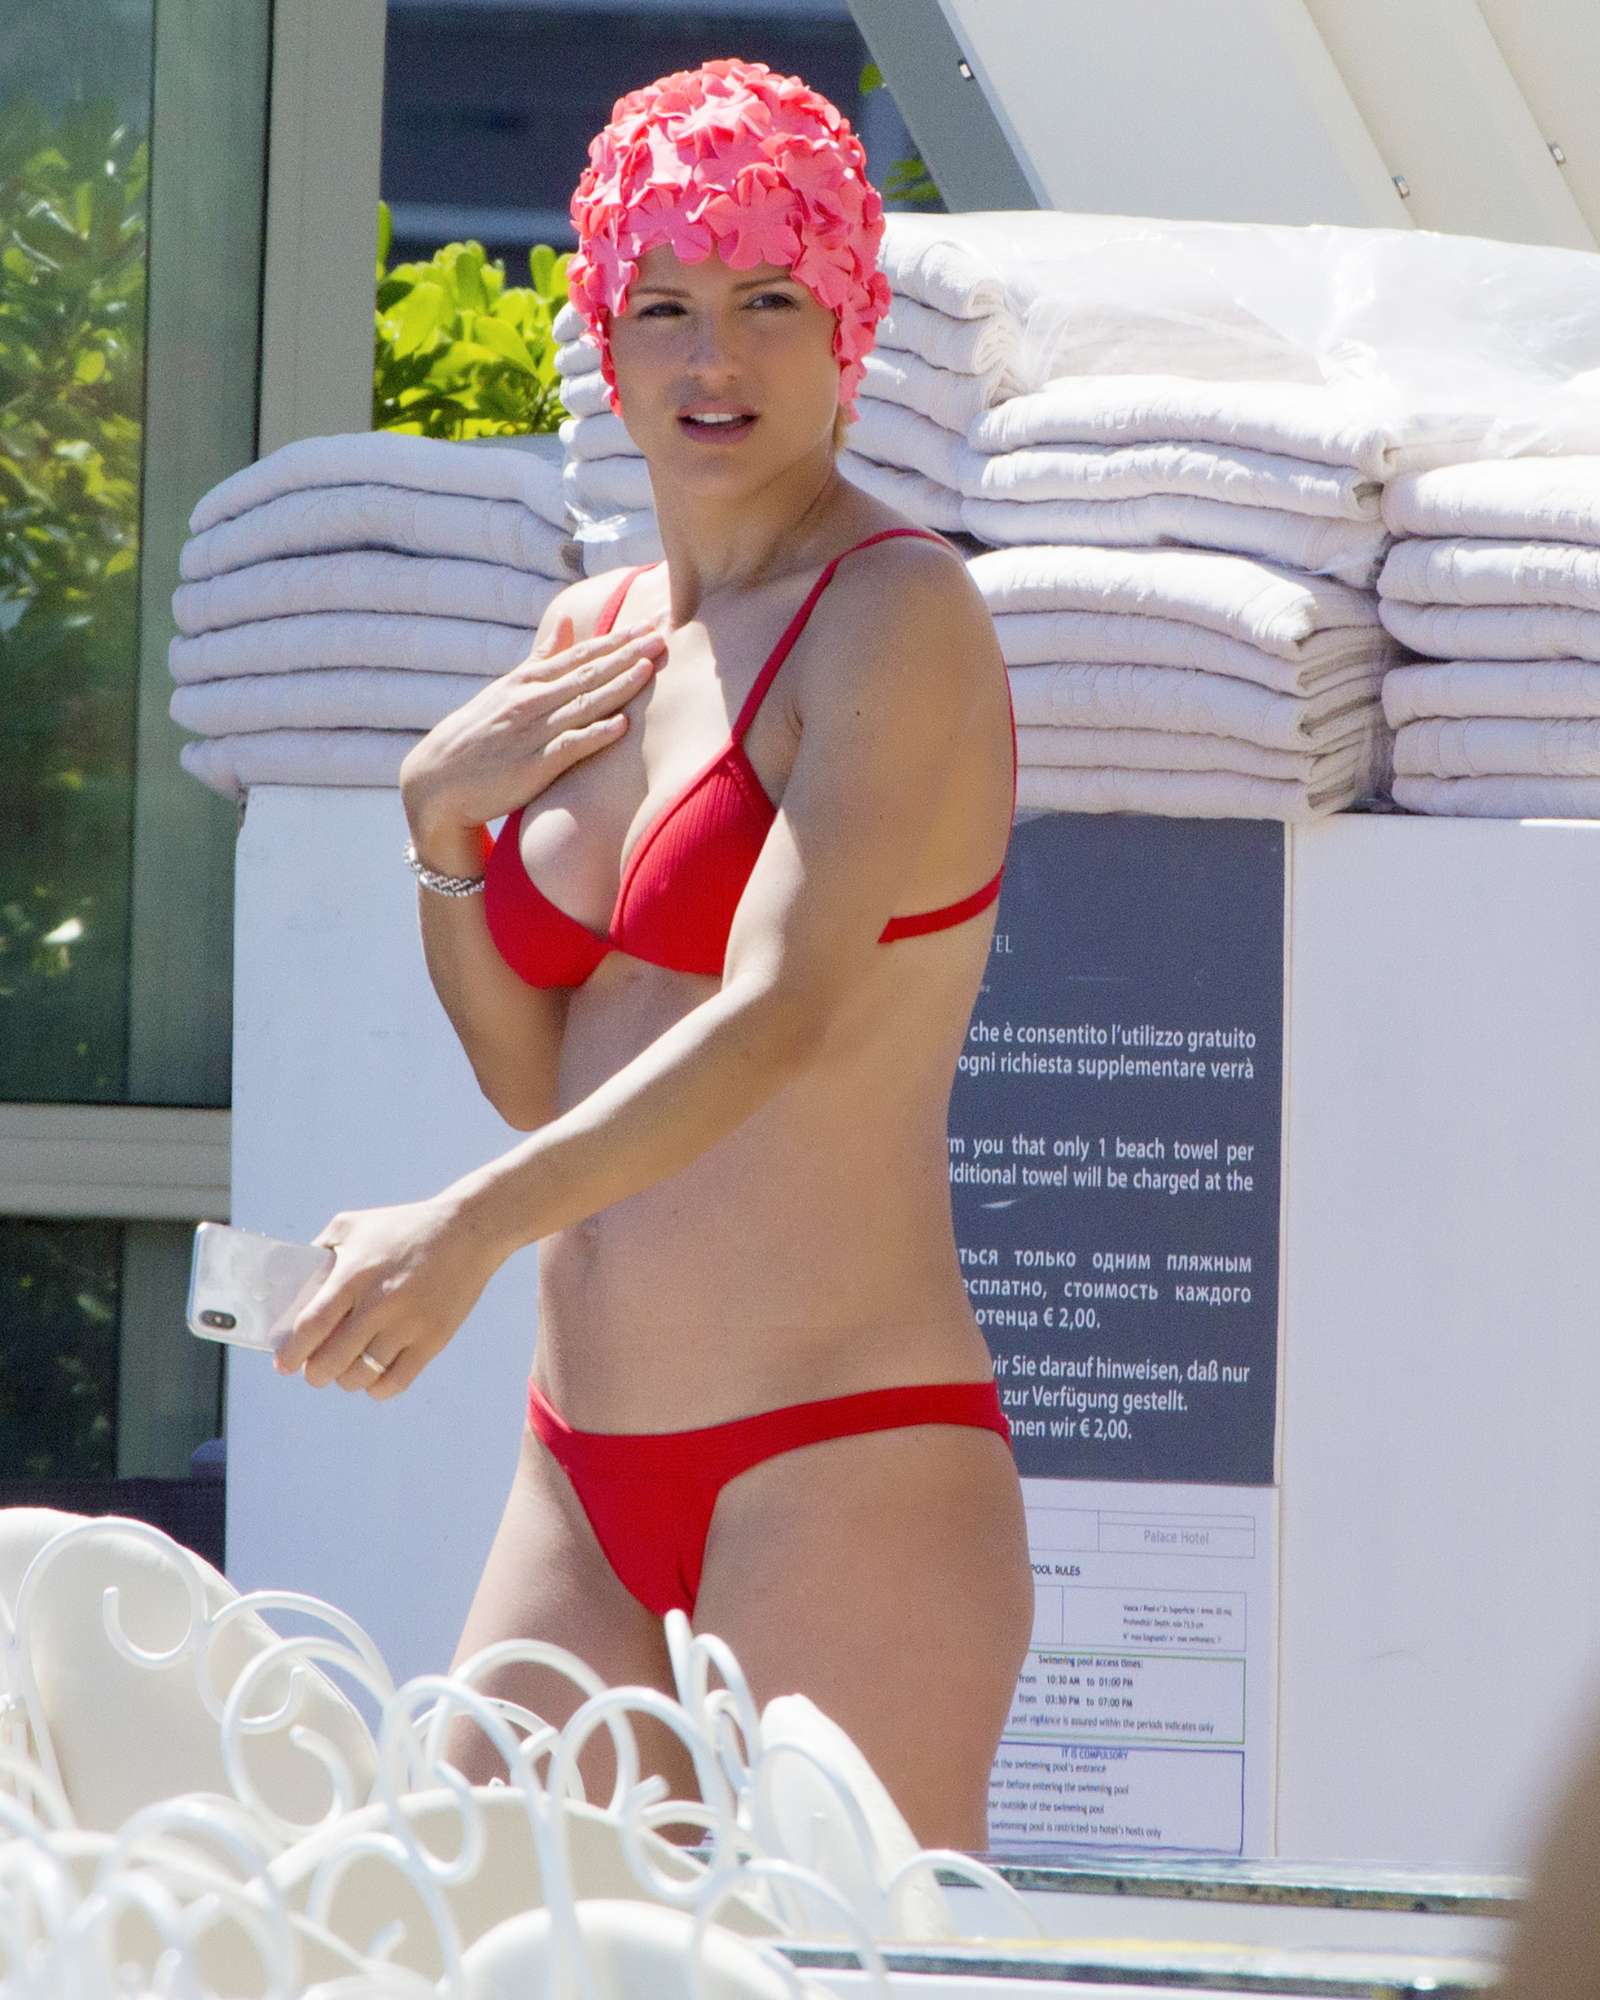 Michelle Hunziker in Red Bikini on the pool in Milano Marittima